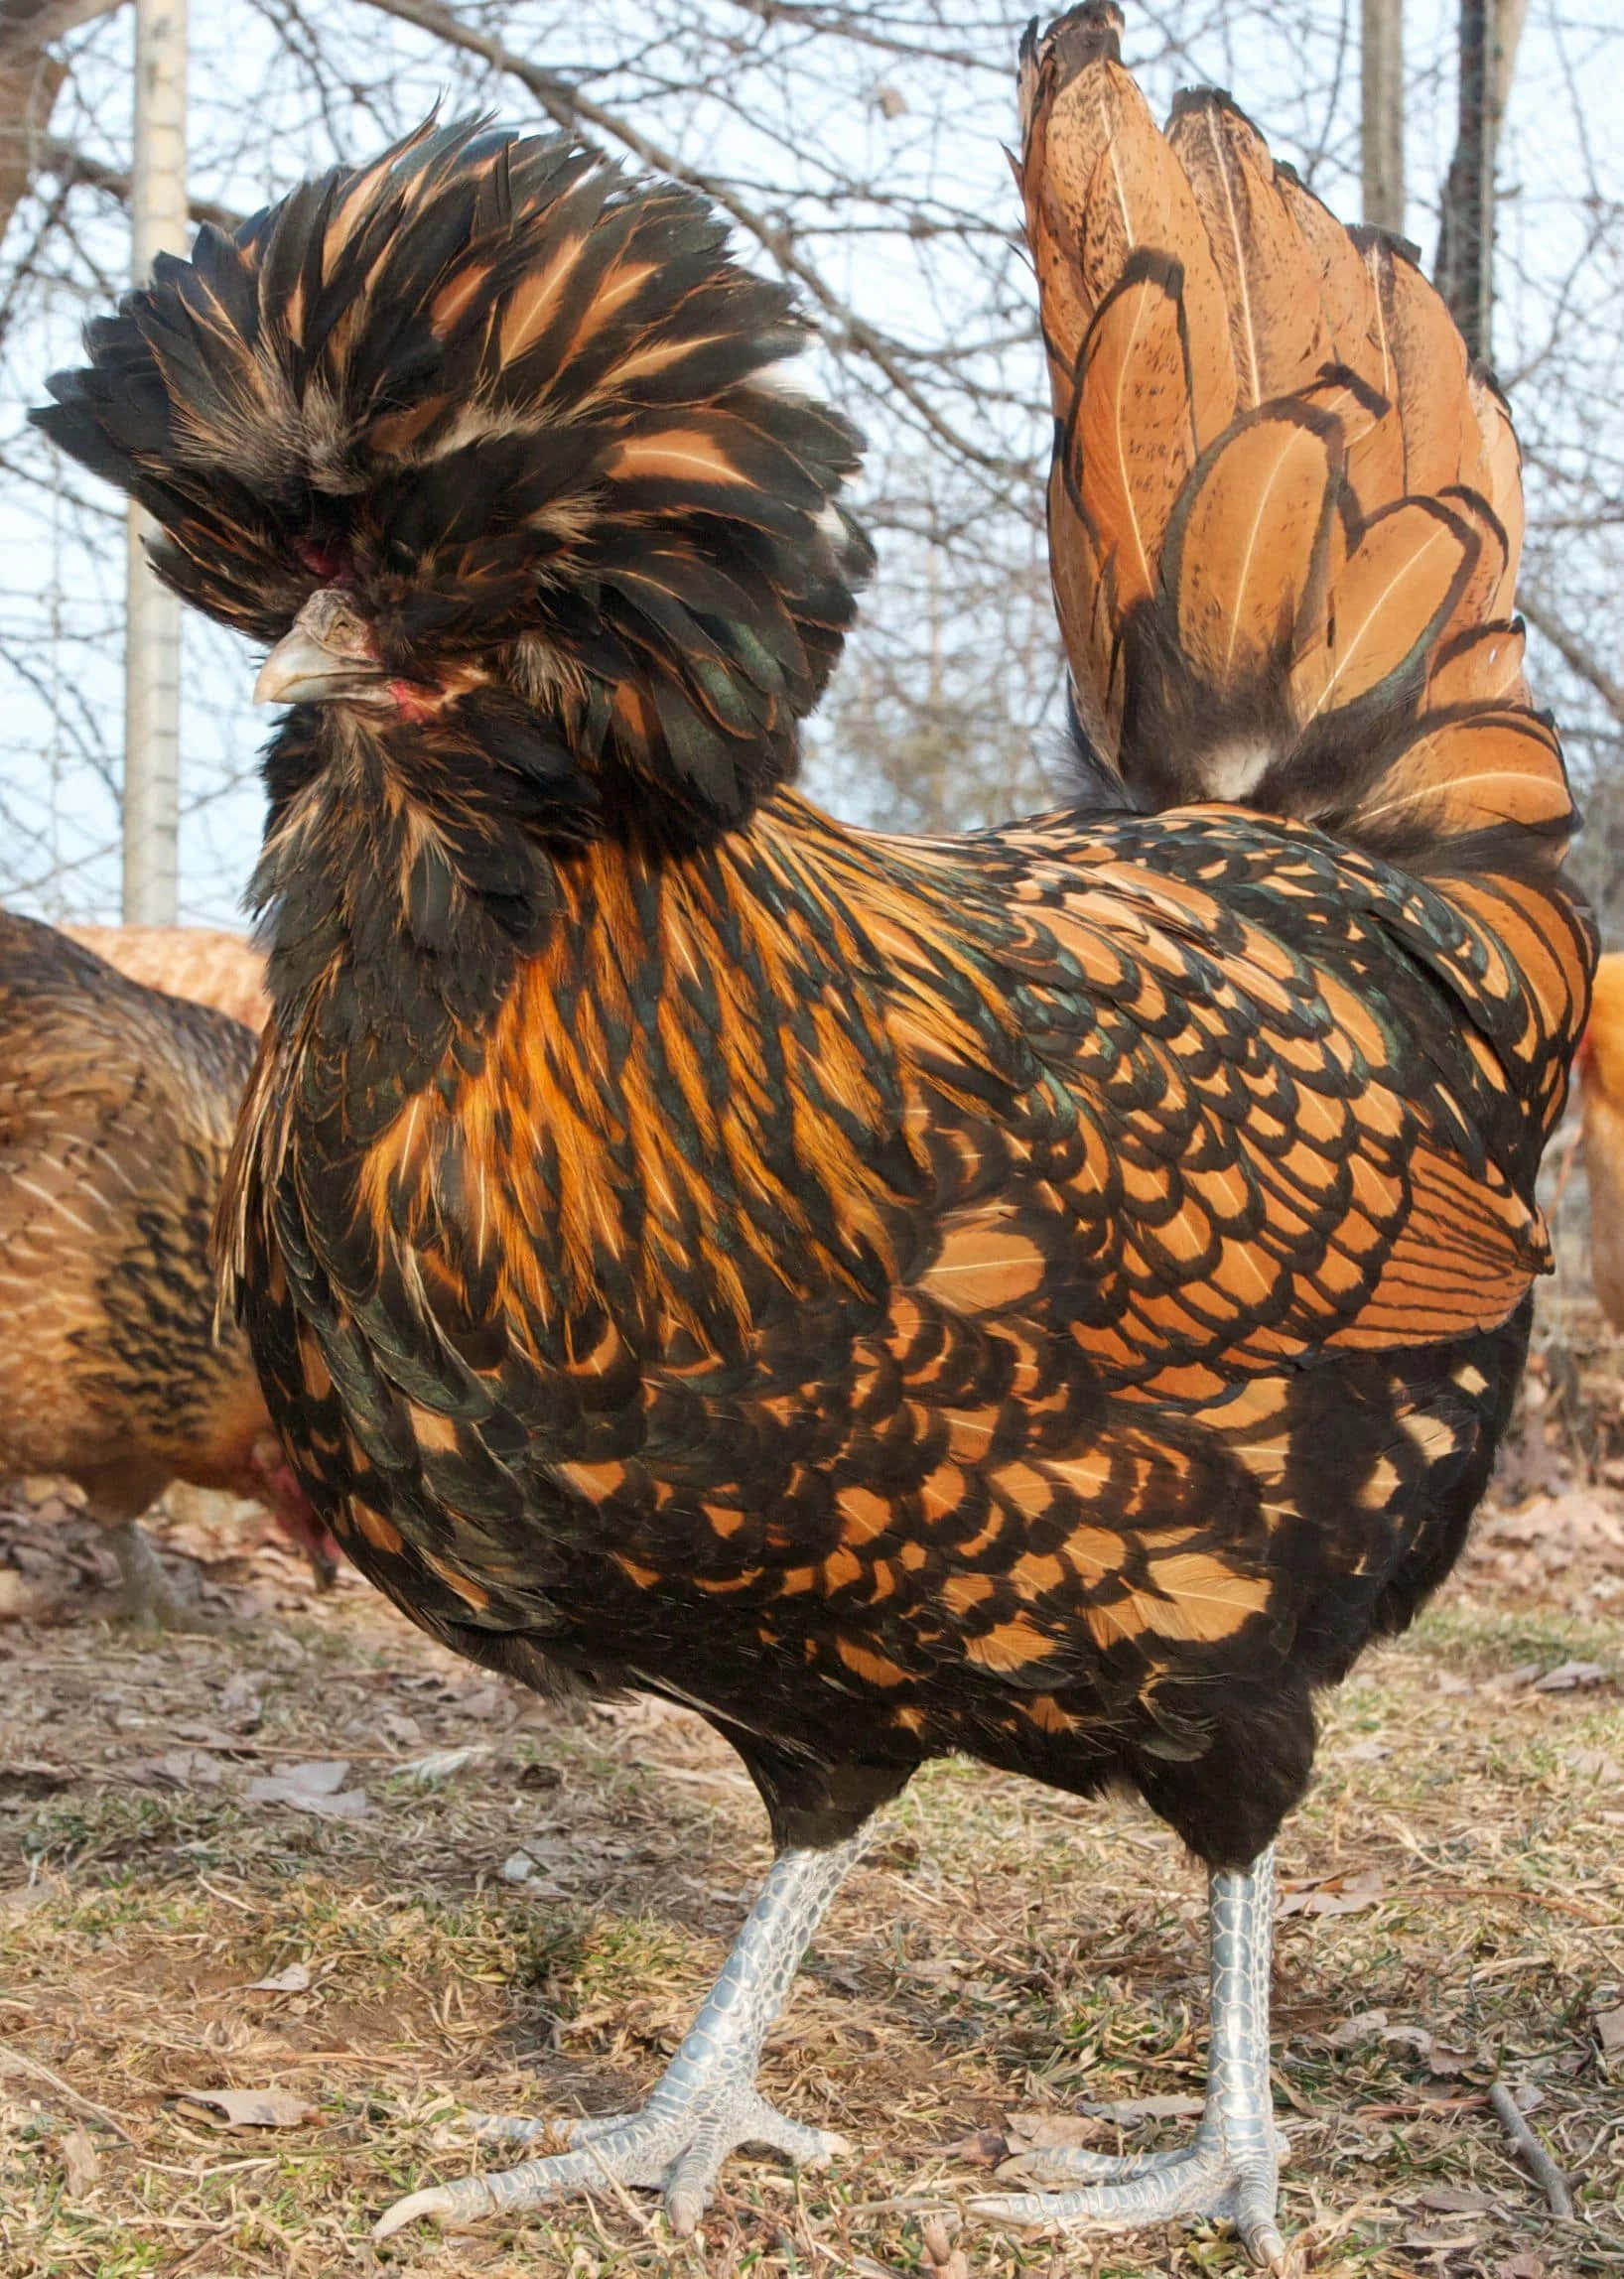 Ennyligen Skördad Kyckling Symboliserar Allt Av Naturens Överflöd